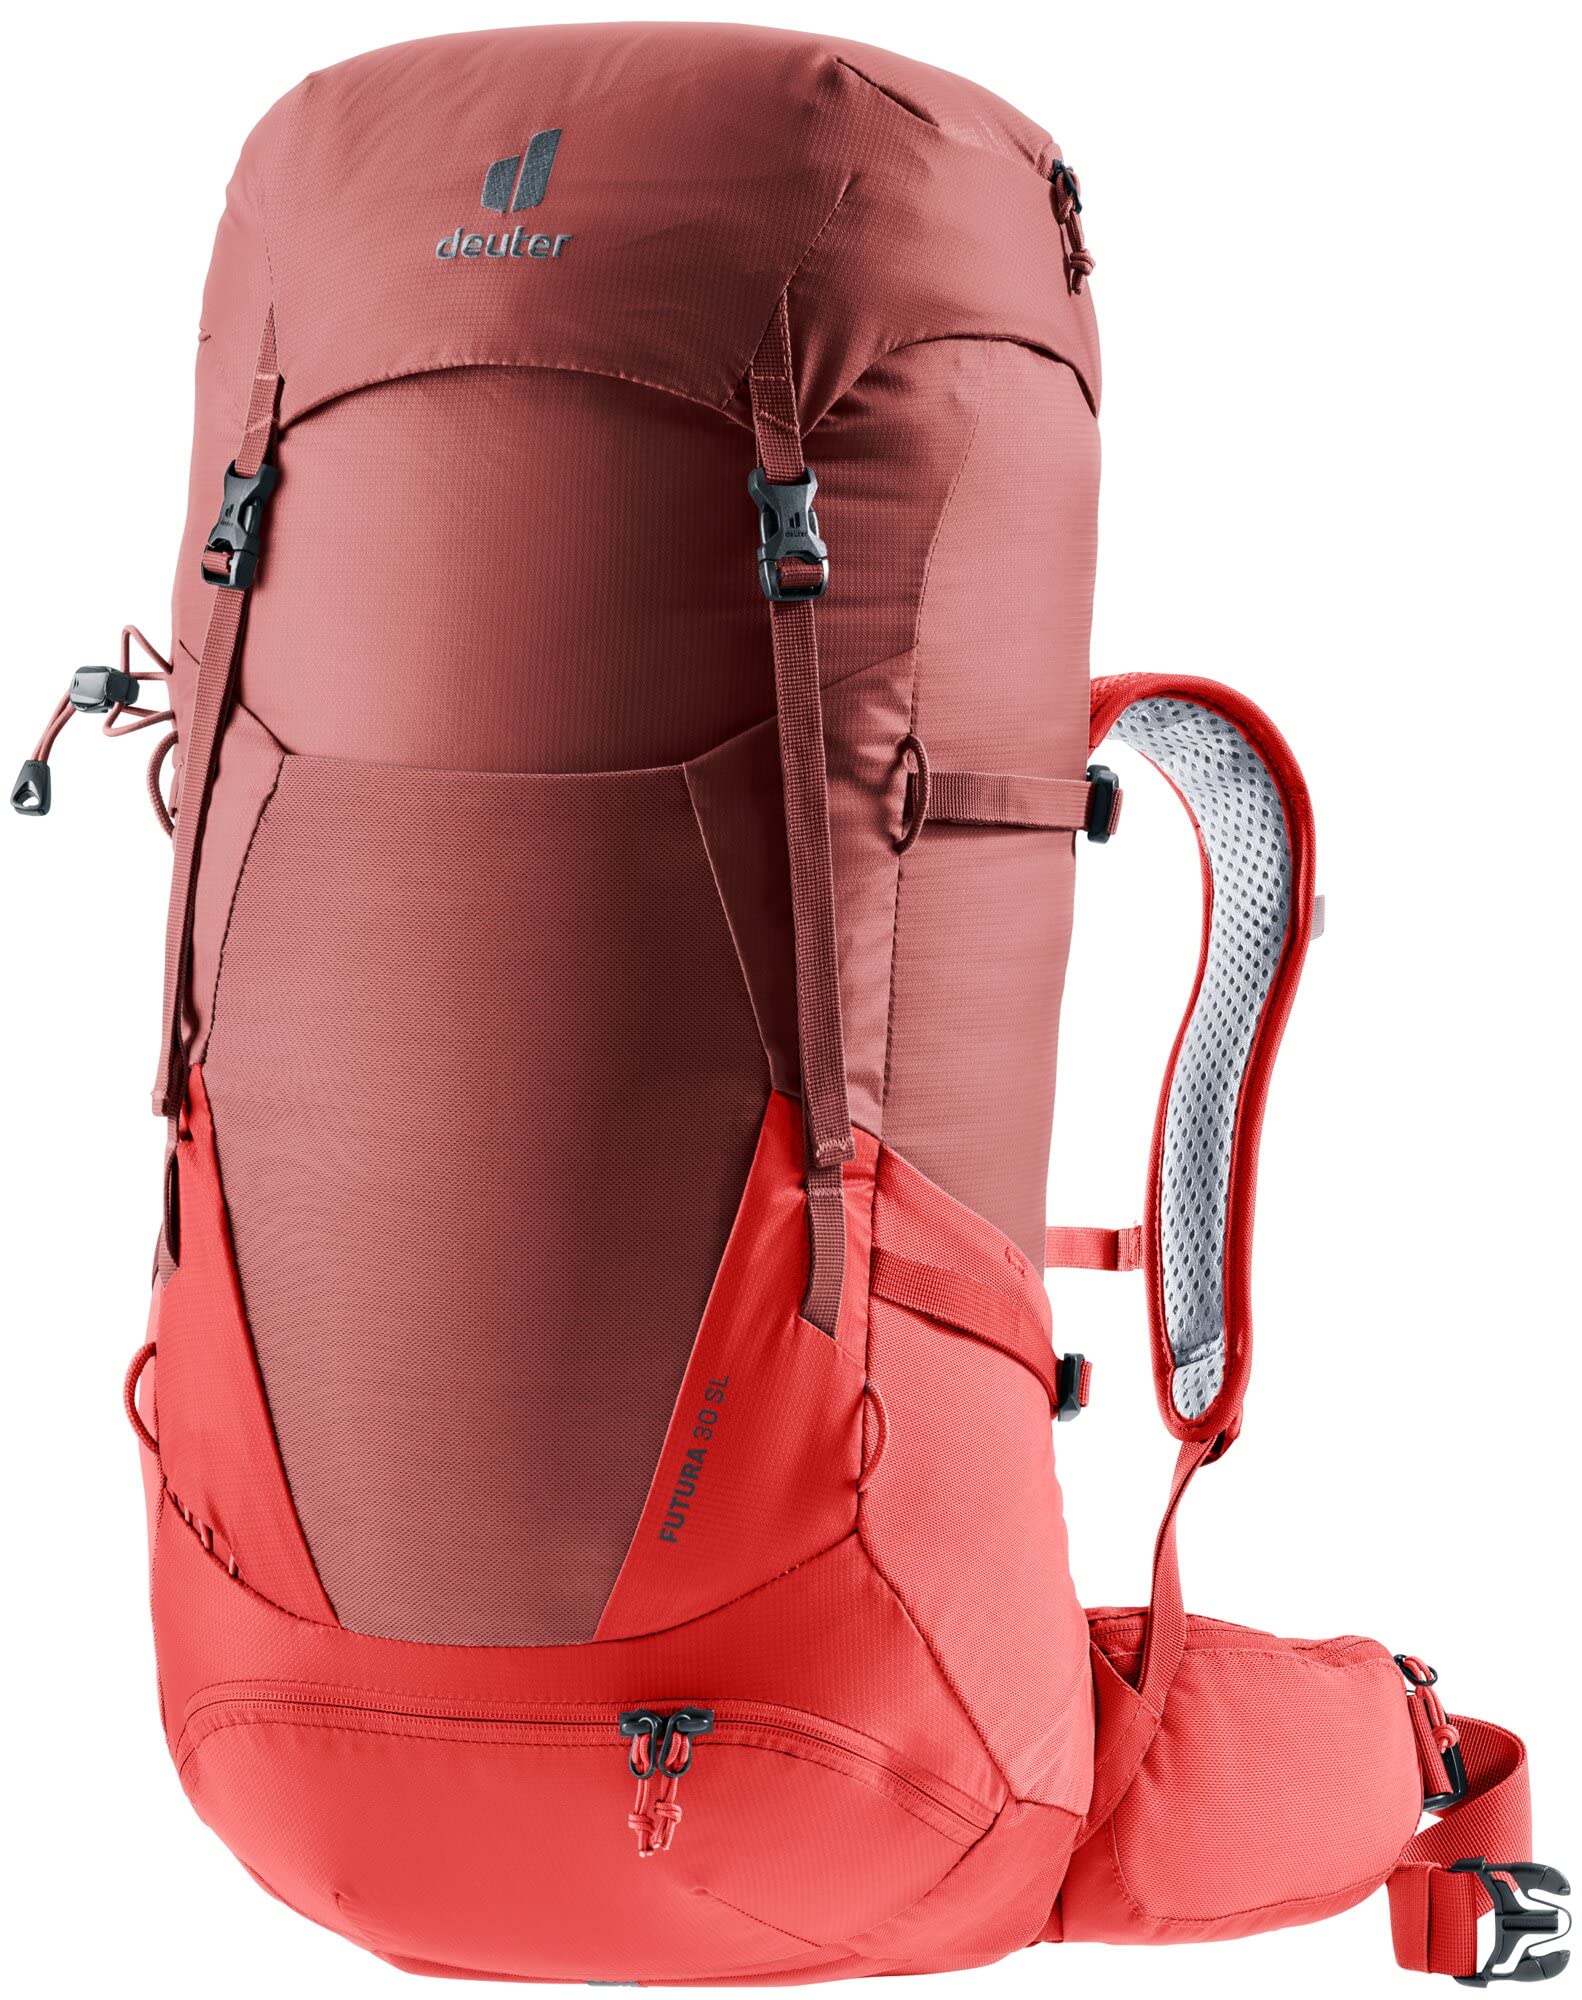 [ドイター] 登山用バックパック フューチュラ 30 SL カスピア×カラント D3400721-5589 2021年モデル レディース 30L